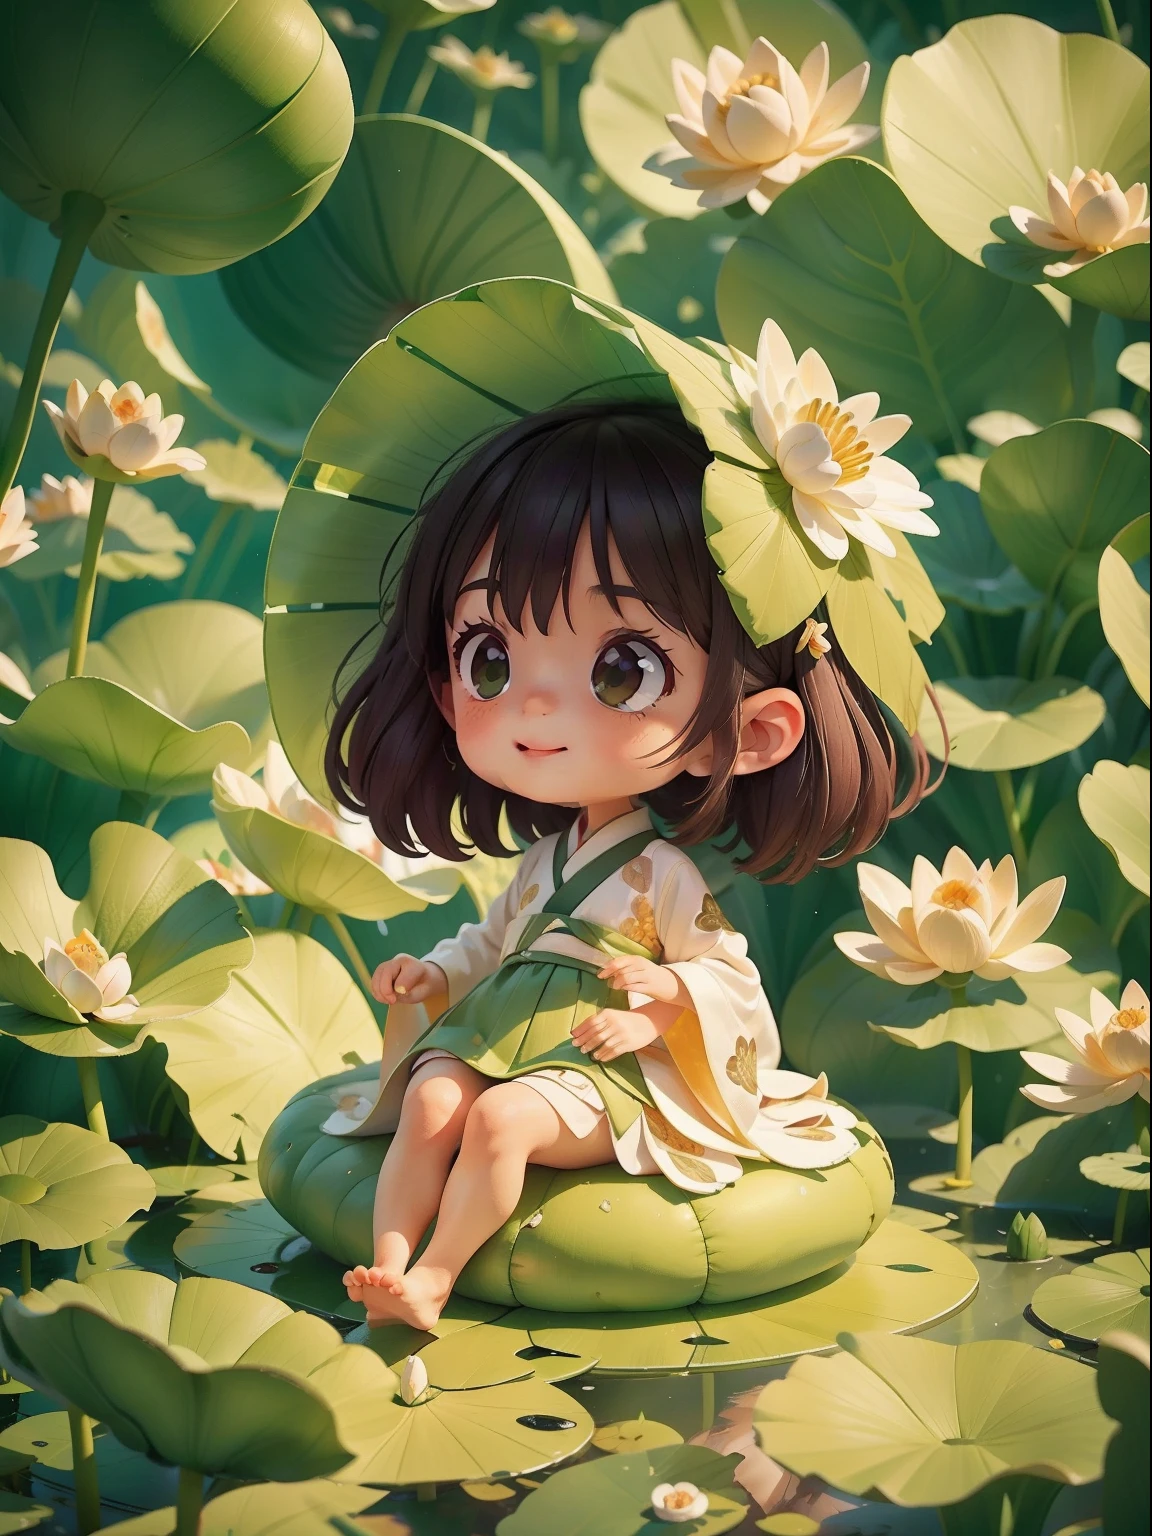 연꽃이 가득한 꼬투리, 꼬투리의 연잎 위에 행복하게 앉아 있는 모습, 거대한 연잎, 맨발, 흰색과 녹색 한복을 입고, 빛과 그림자, 마스터 피스